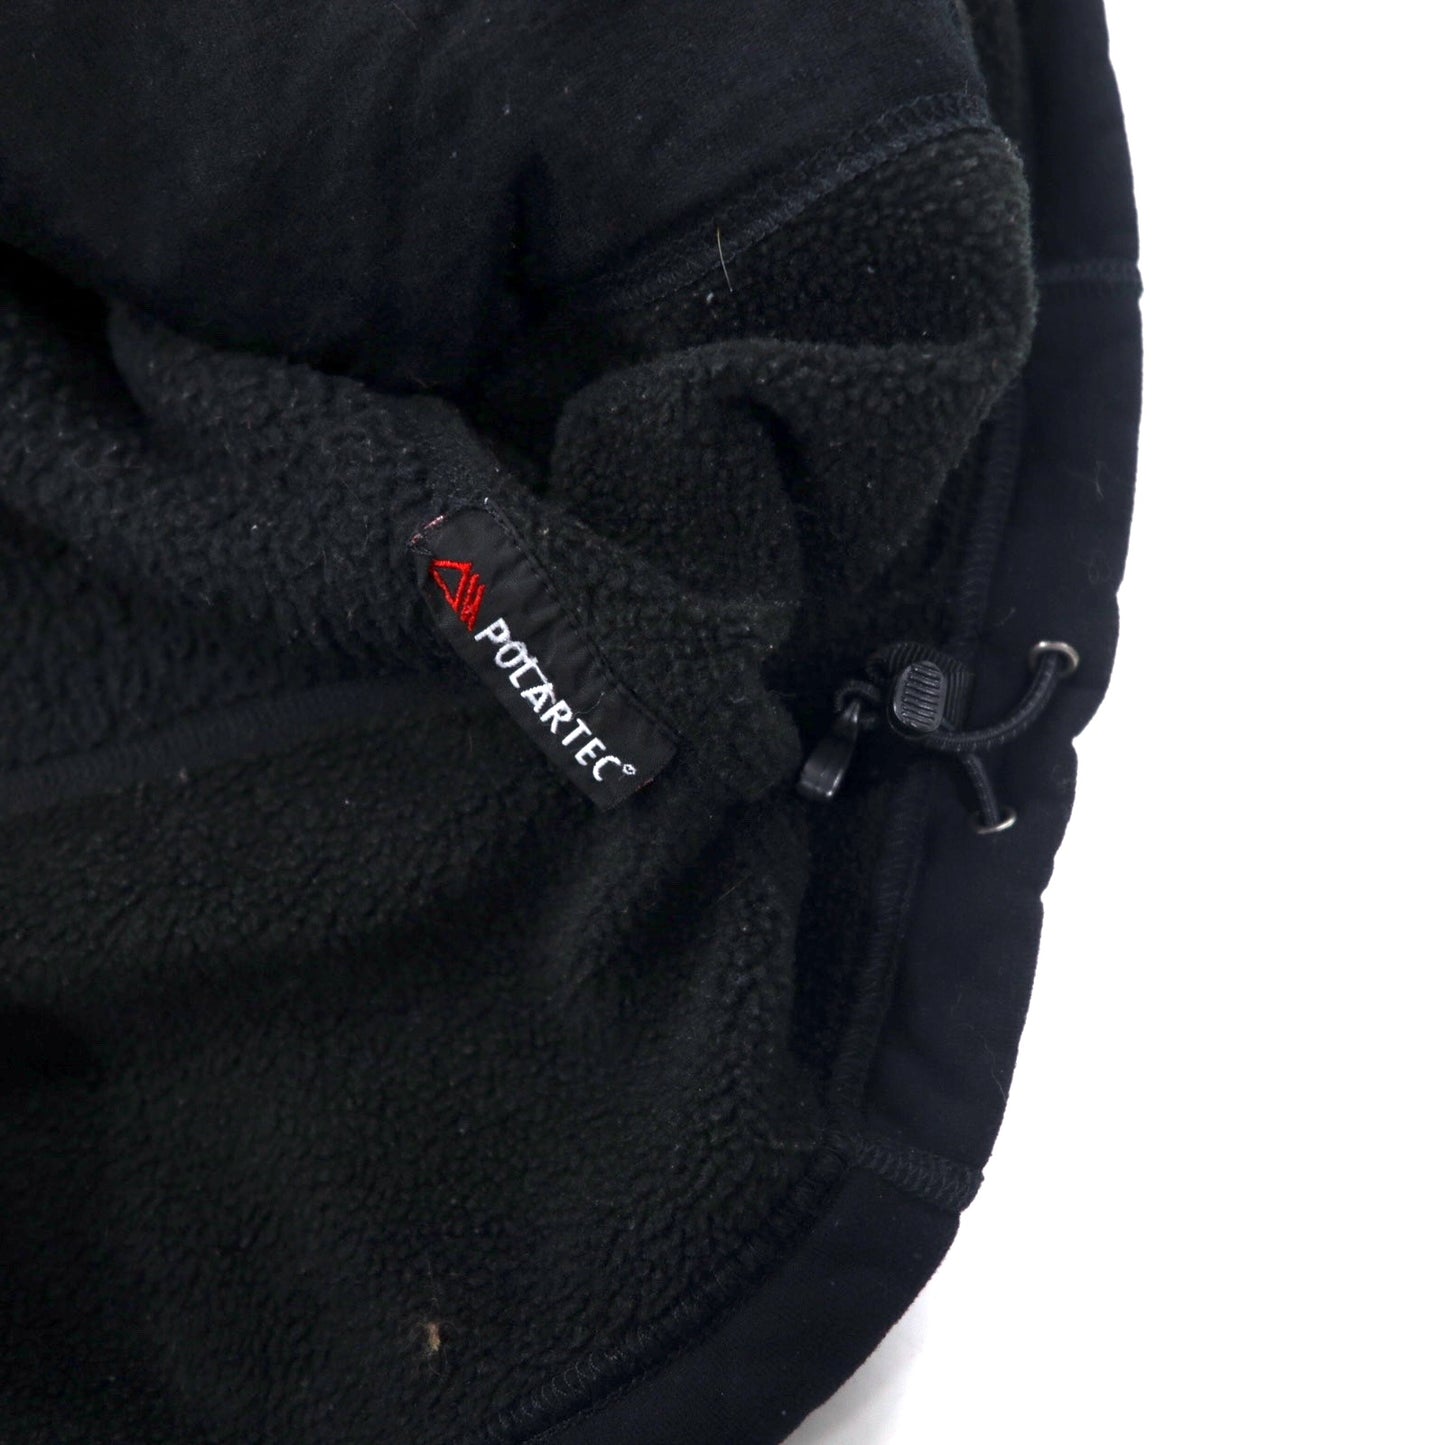 THE NORTH FACE サミットシリーズ フルジップ フリースジャケット L ブラック POLARTEC ポリエステル ワンポイントロゴ刺繍 SUMMIT SERIES